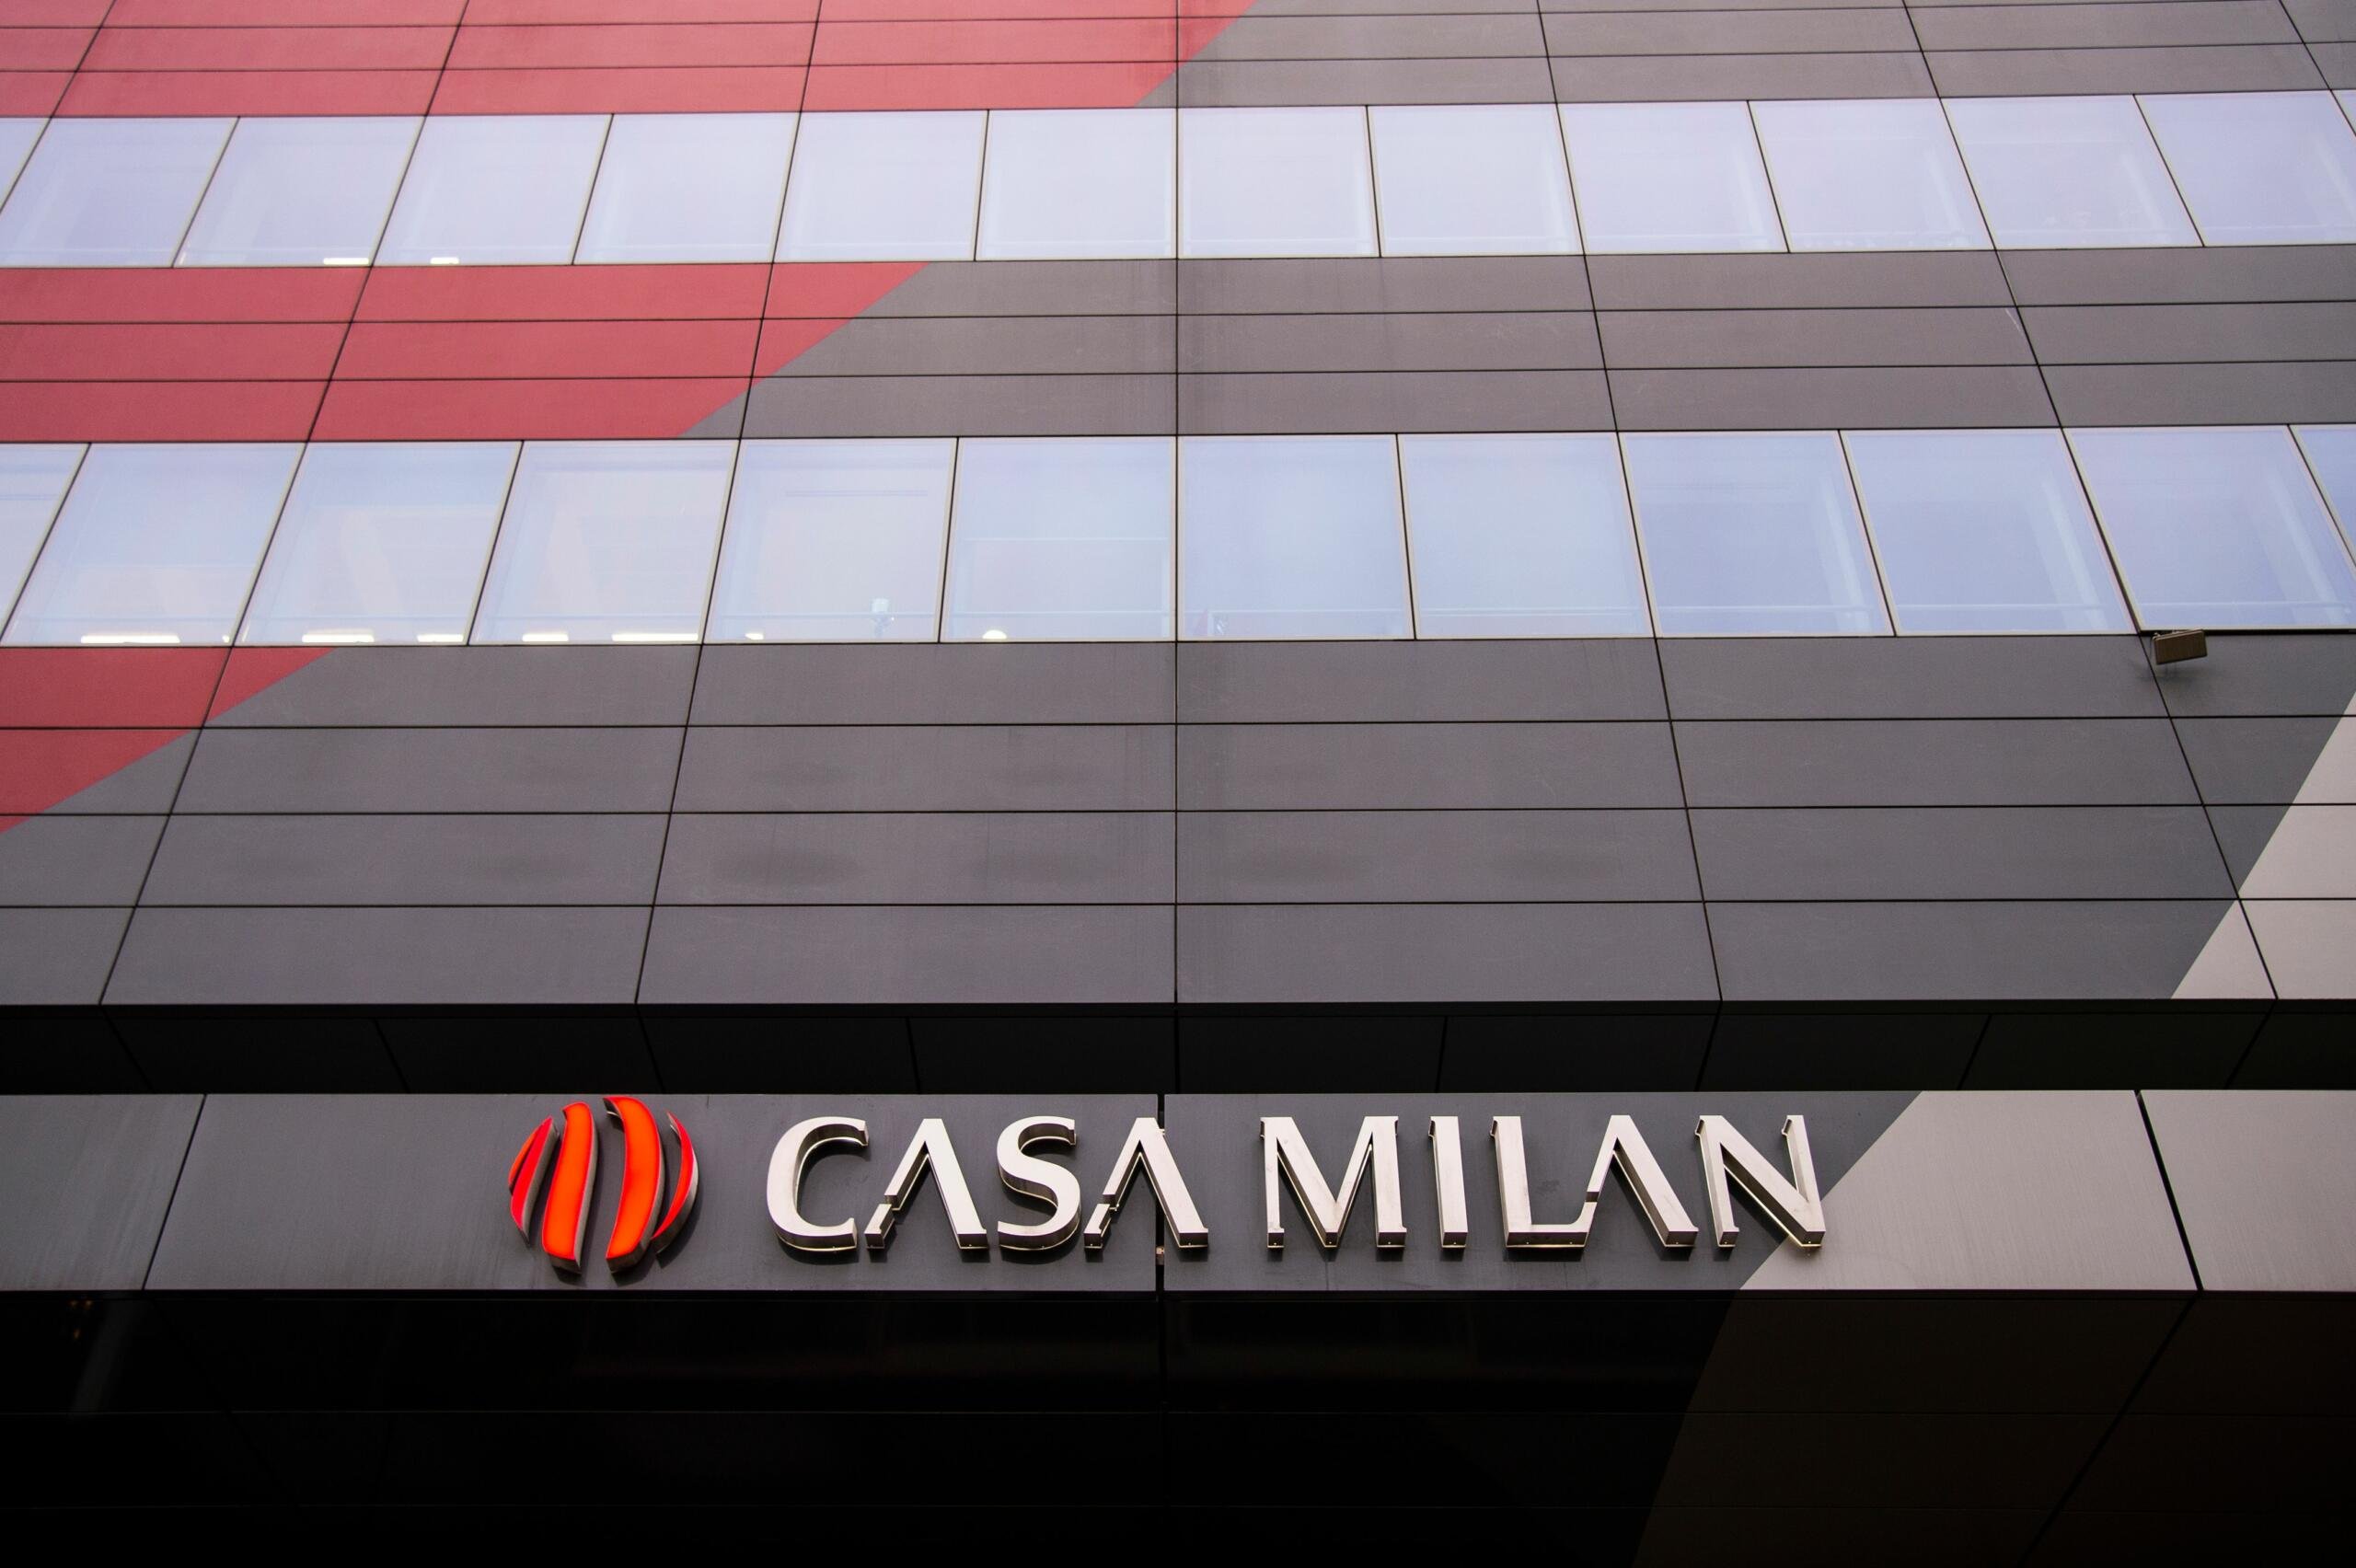 Sala Milan Investcorp